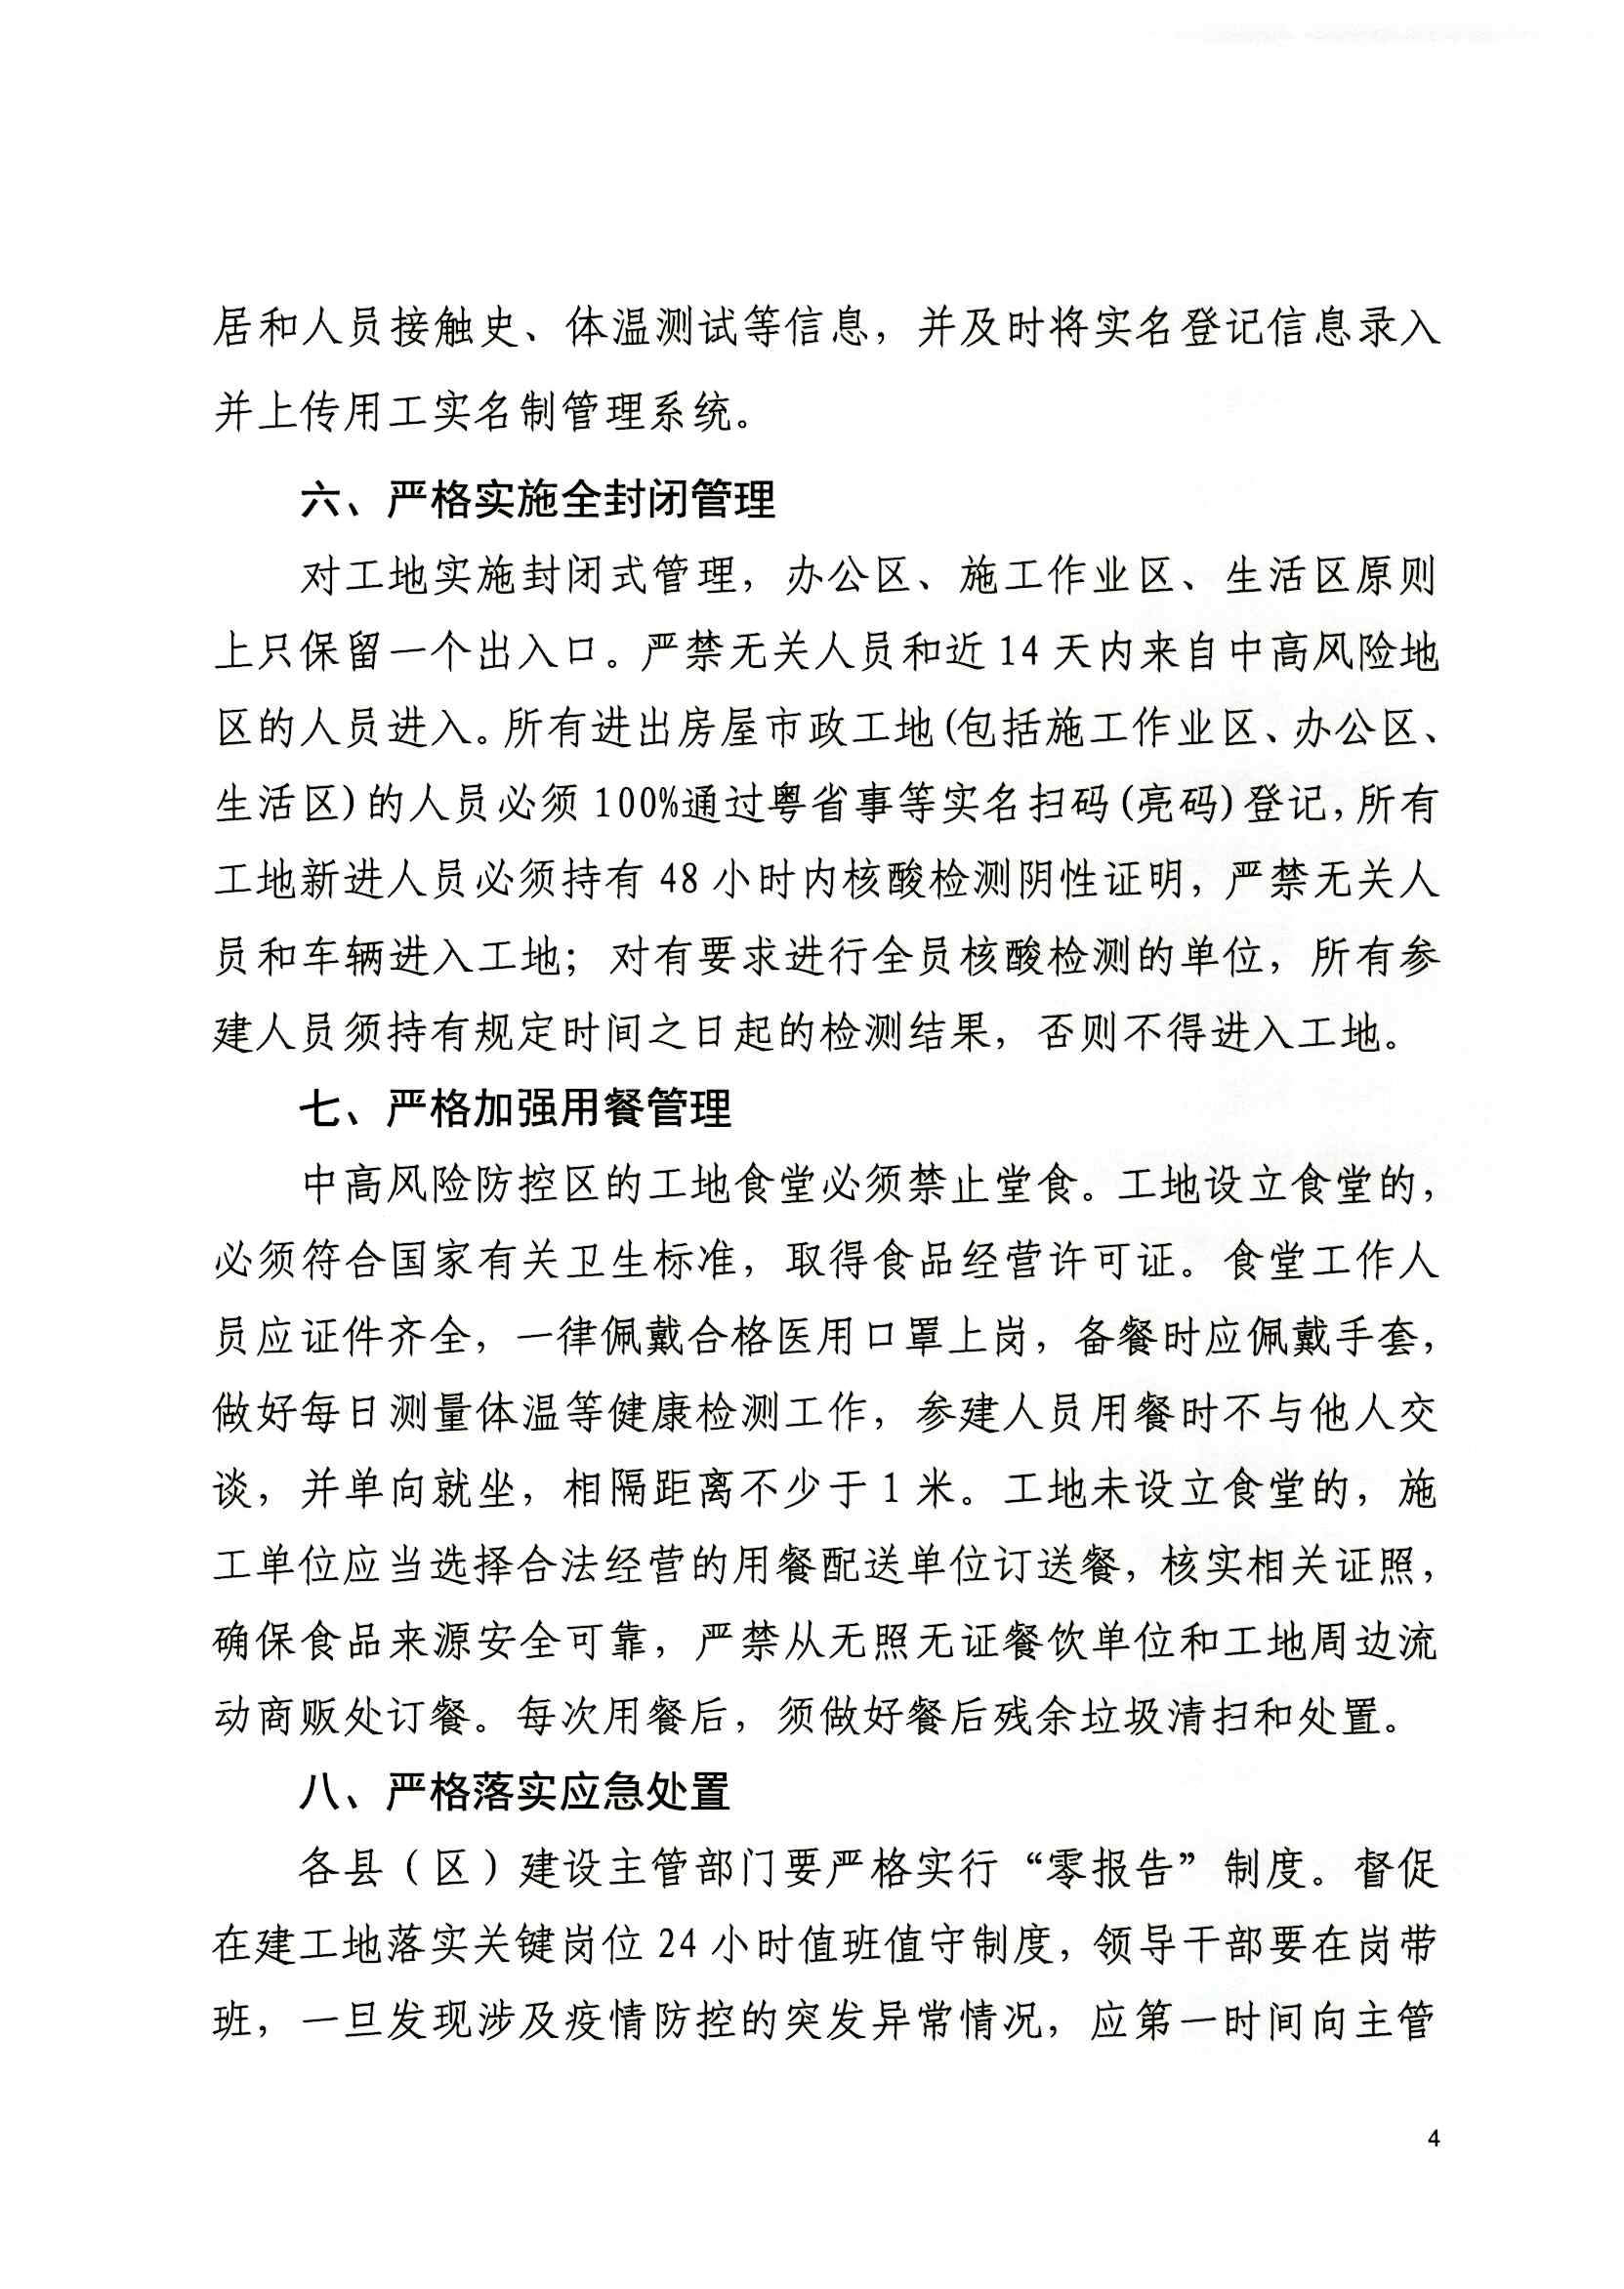 惠州市住房和城乡建设局关于严格落实建设工地疫情防控措施的紧急通知_看图王_页面_4.jpg